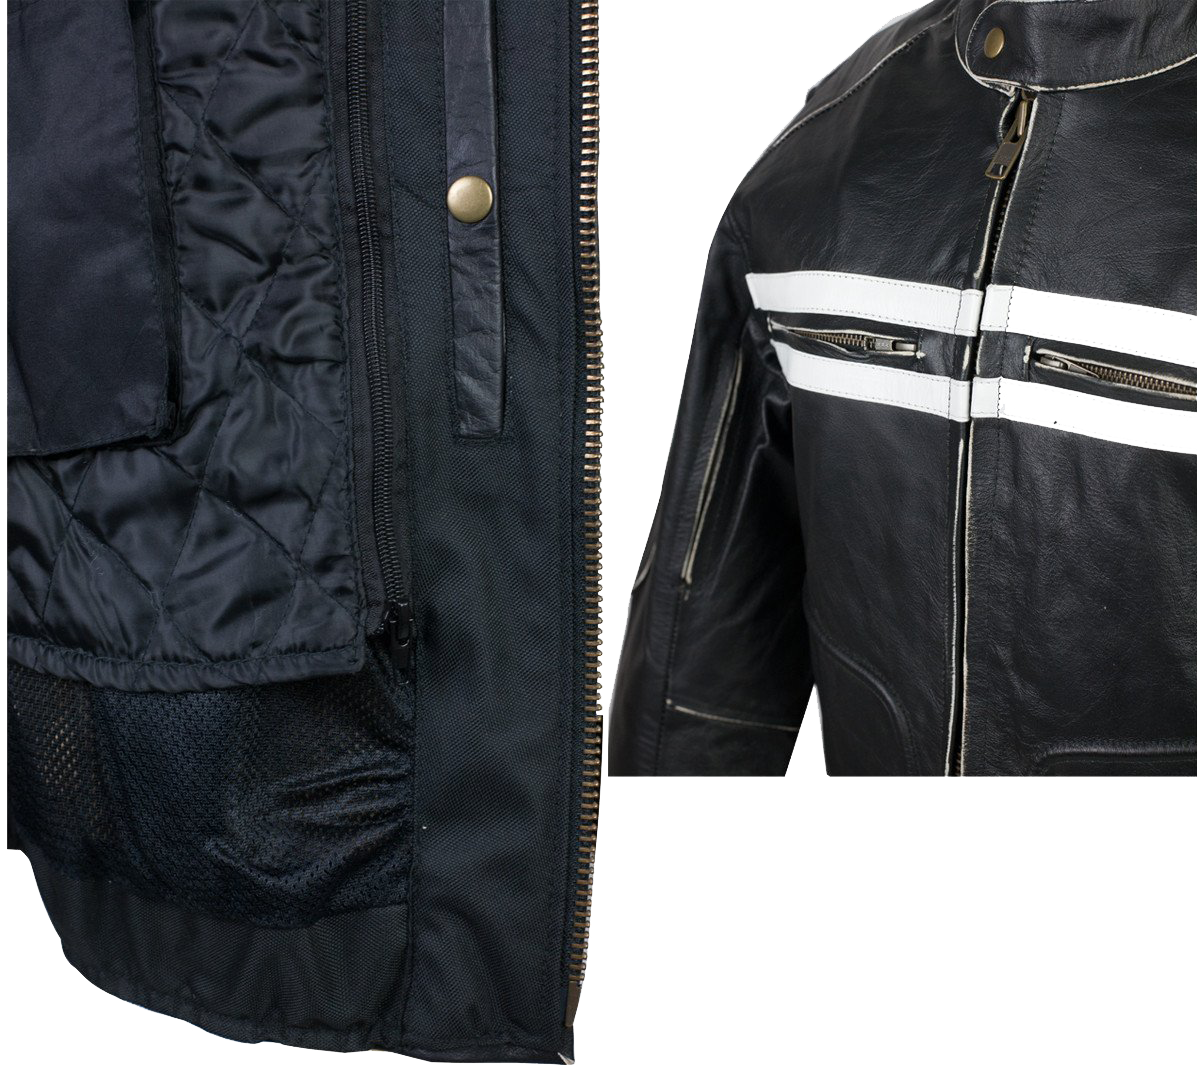 VL541 Vintage Premium Distressed Leather Motorcycle Jacket